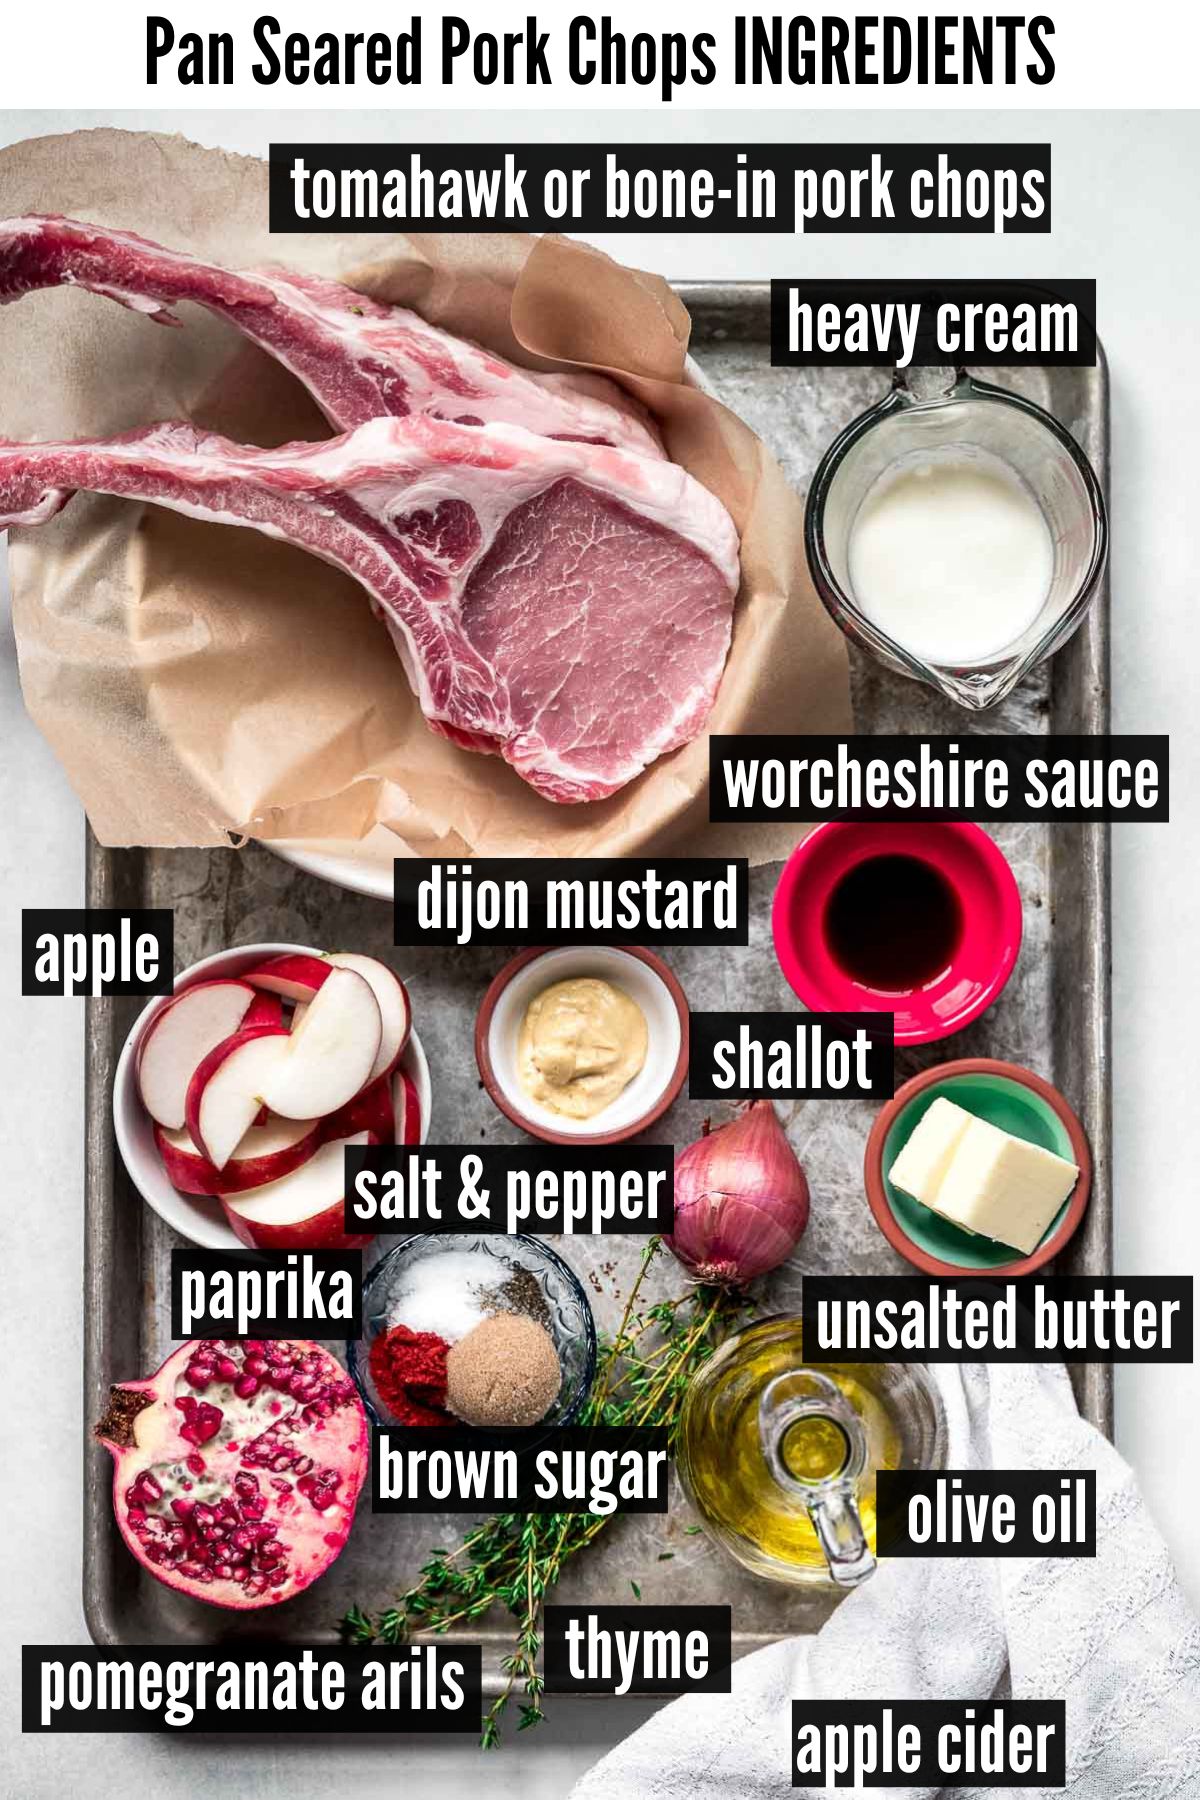 pan seared pork chops labelled ingredients.